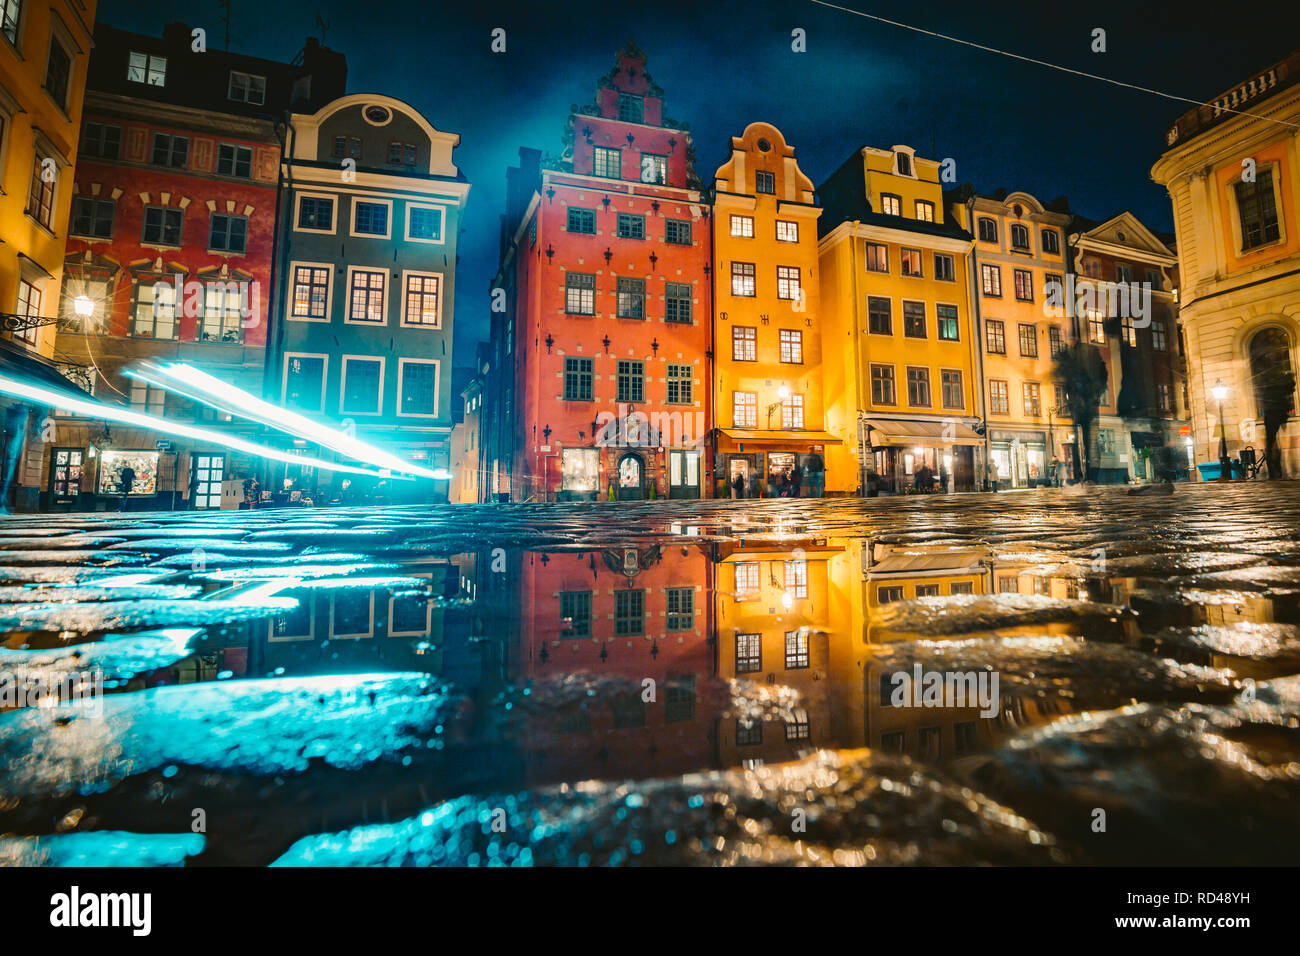 Klassische Ansicht der bunten Häusern an der berühmten stortorget Stadtplatz in der Stockholmer Altstadt Gamla Stan (Altstadt) reflektiert in einer Pfütze in der Nacht Stockfoto